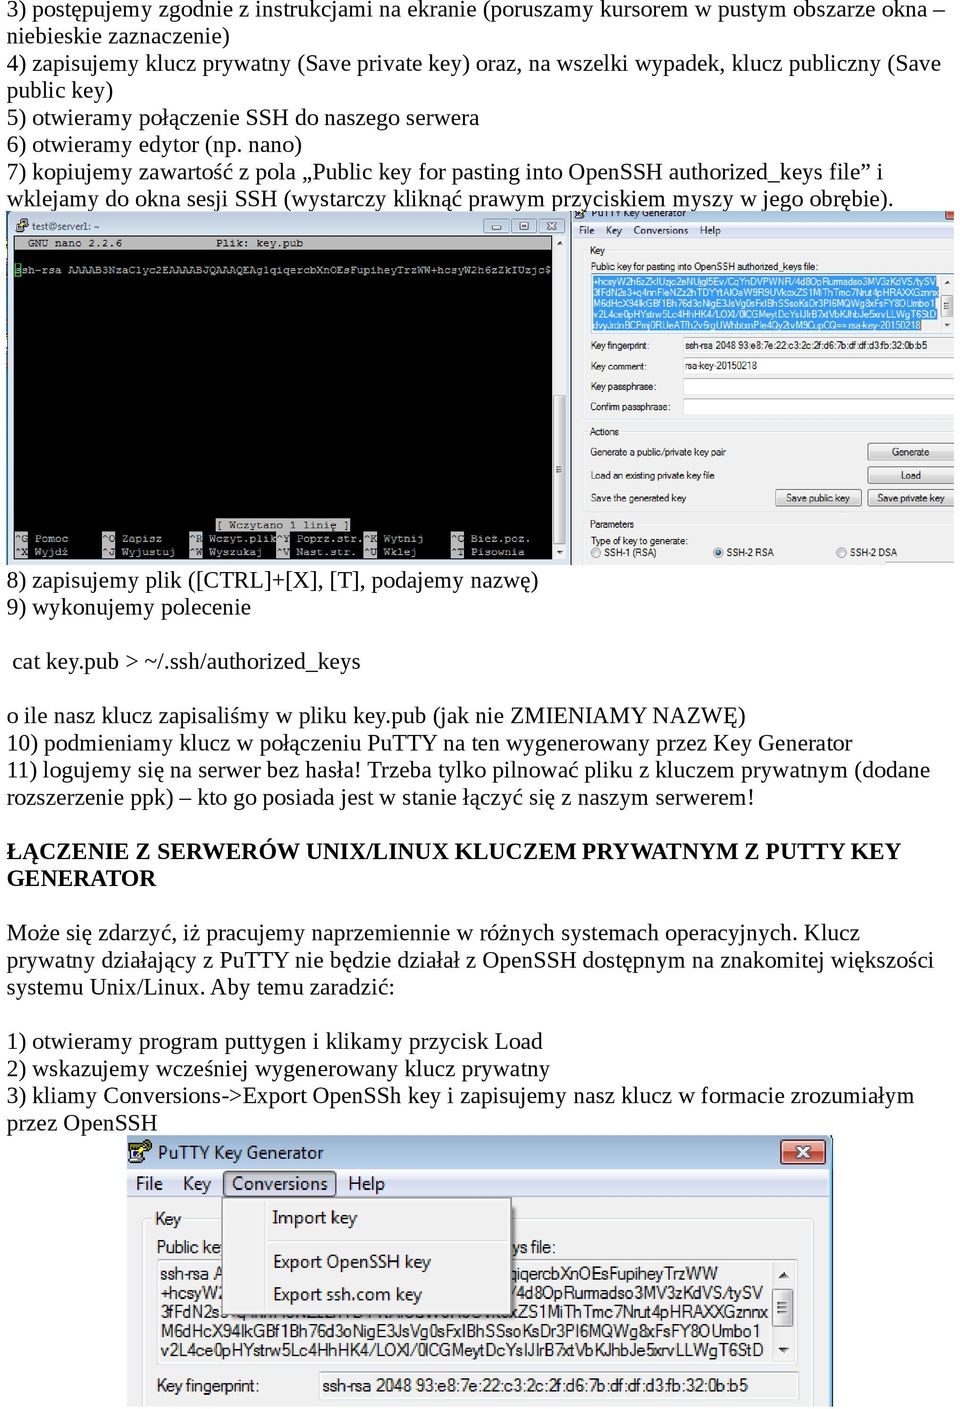 nano) 7) kopiujemy zawartość z pola Public key for pasting into OpenSSH authorized_keys file i wklejamy do okna sesji SSH (wystarczy kliknąć prawym przyciskiem myszy w jego obrębie).